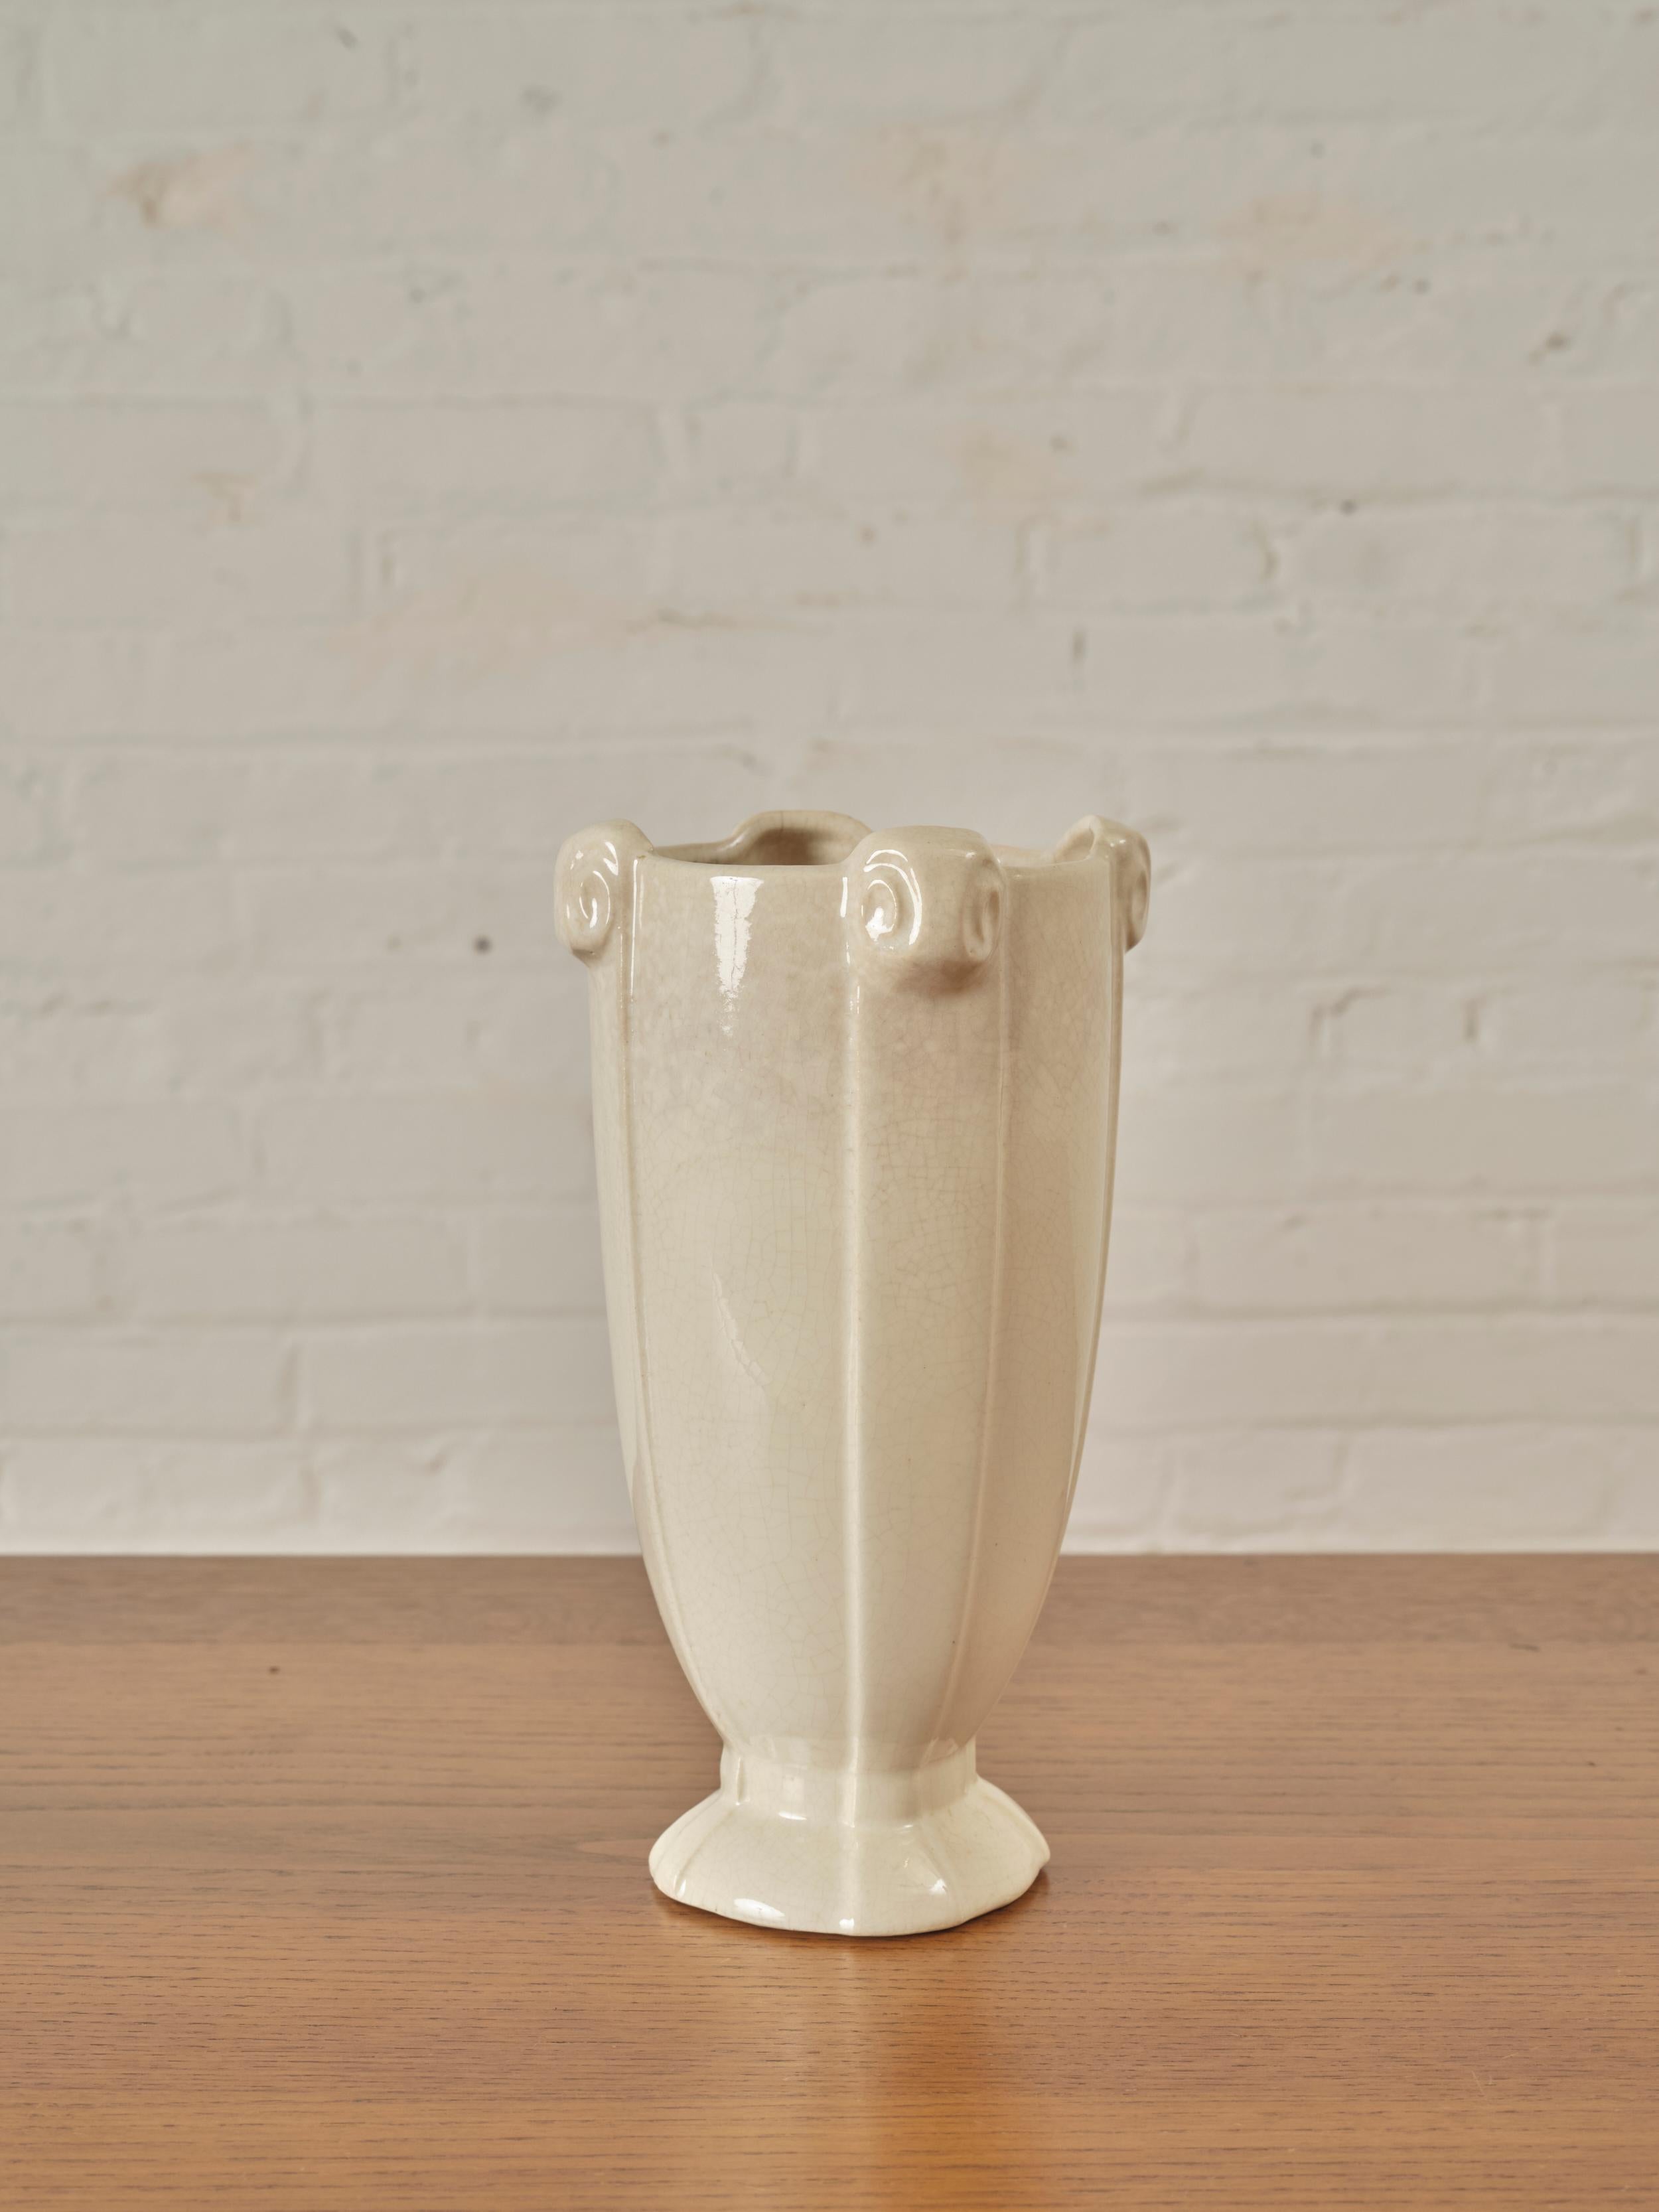 Glasierte Vase von McCoy Pottery. Markierungen auf der Unterseite

